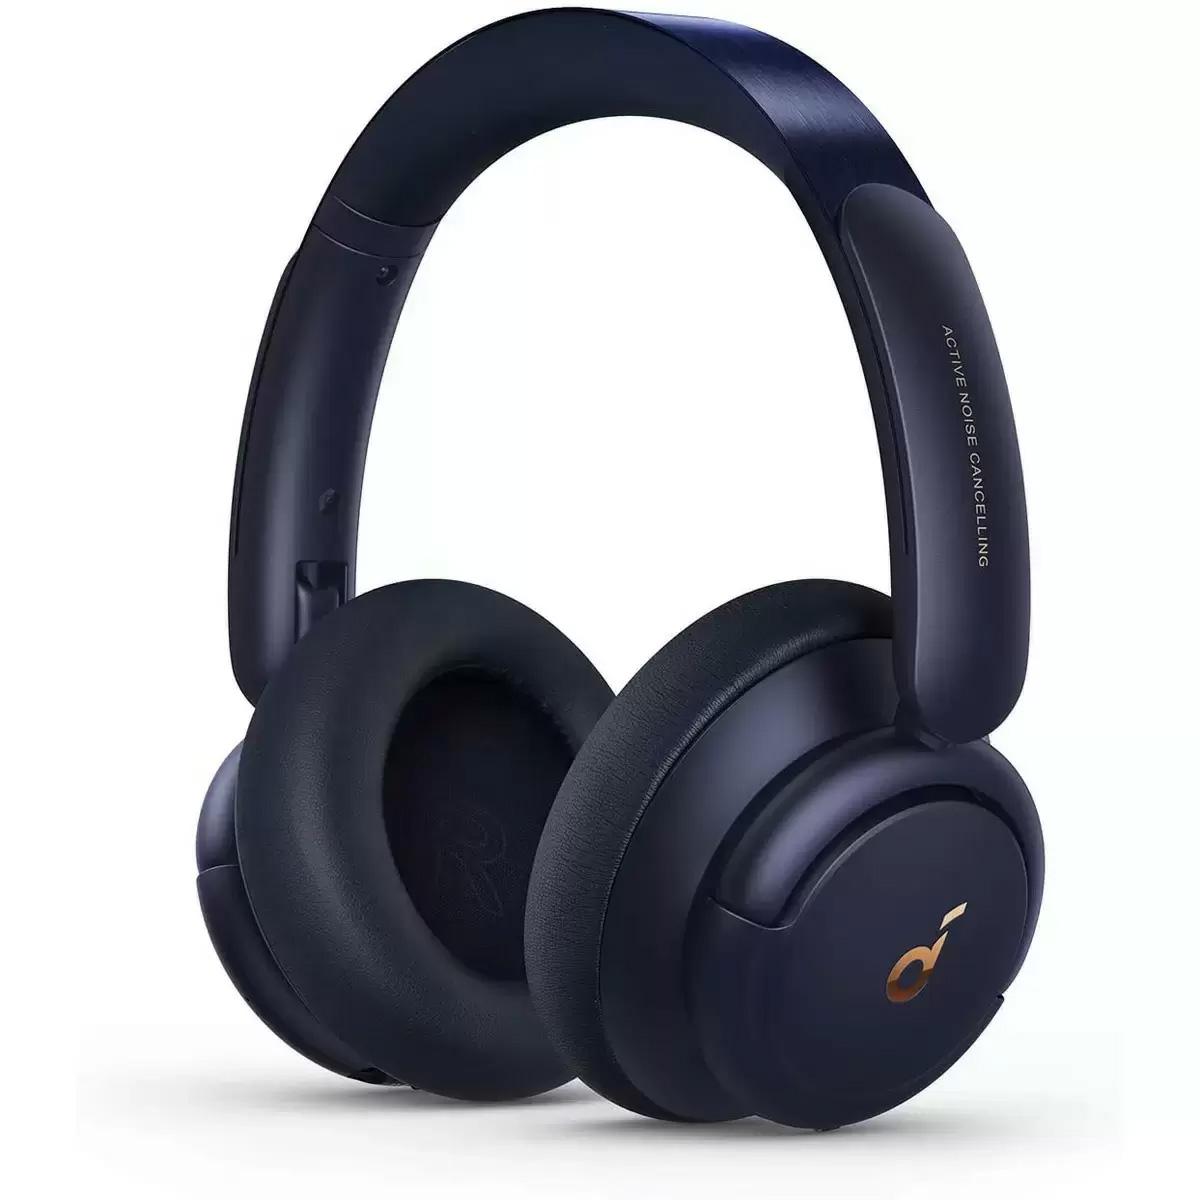 Anker Soundcore Life Q30 Hybrid Wireless Headphones for $59.99 Shipped